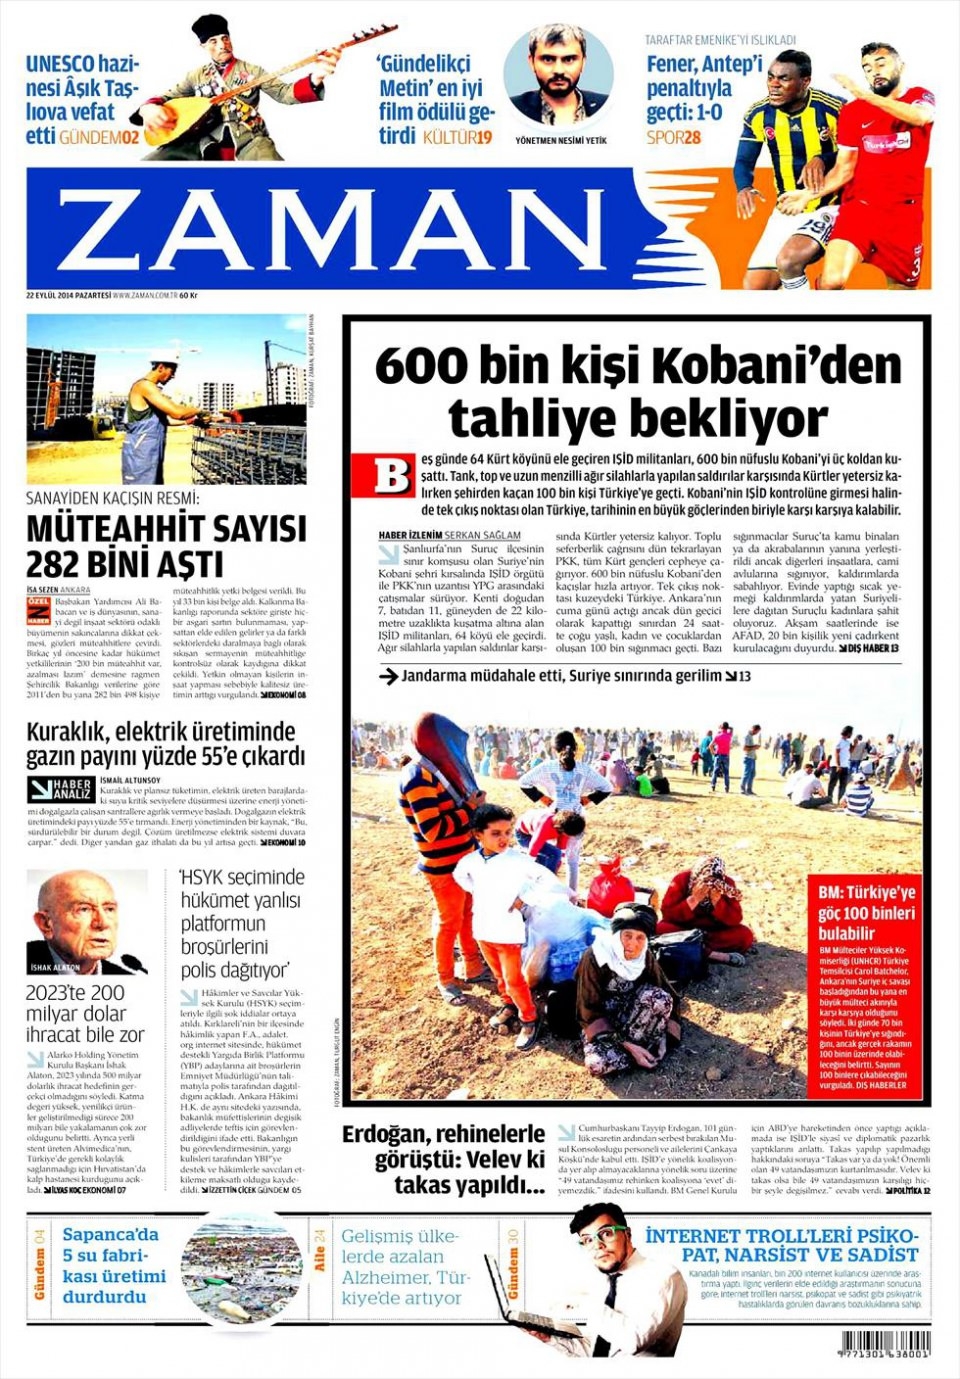 22 Eylül 2014 gazete manşetleri 25